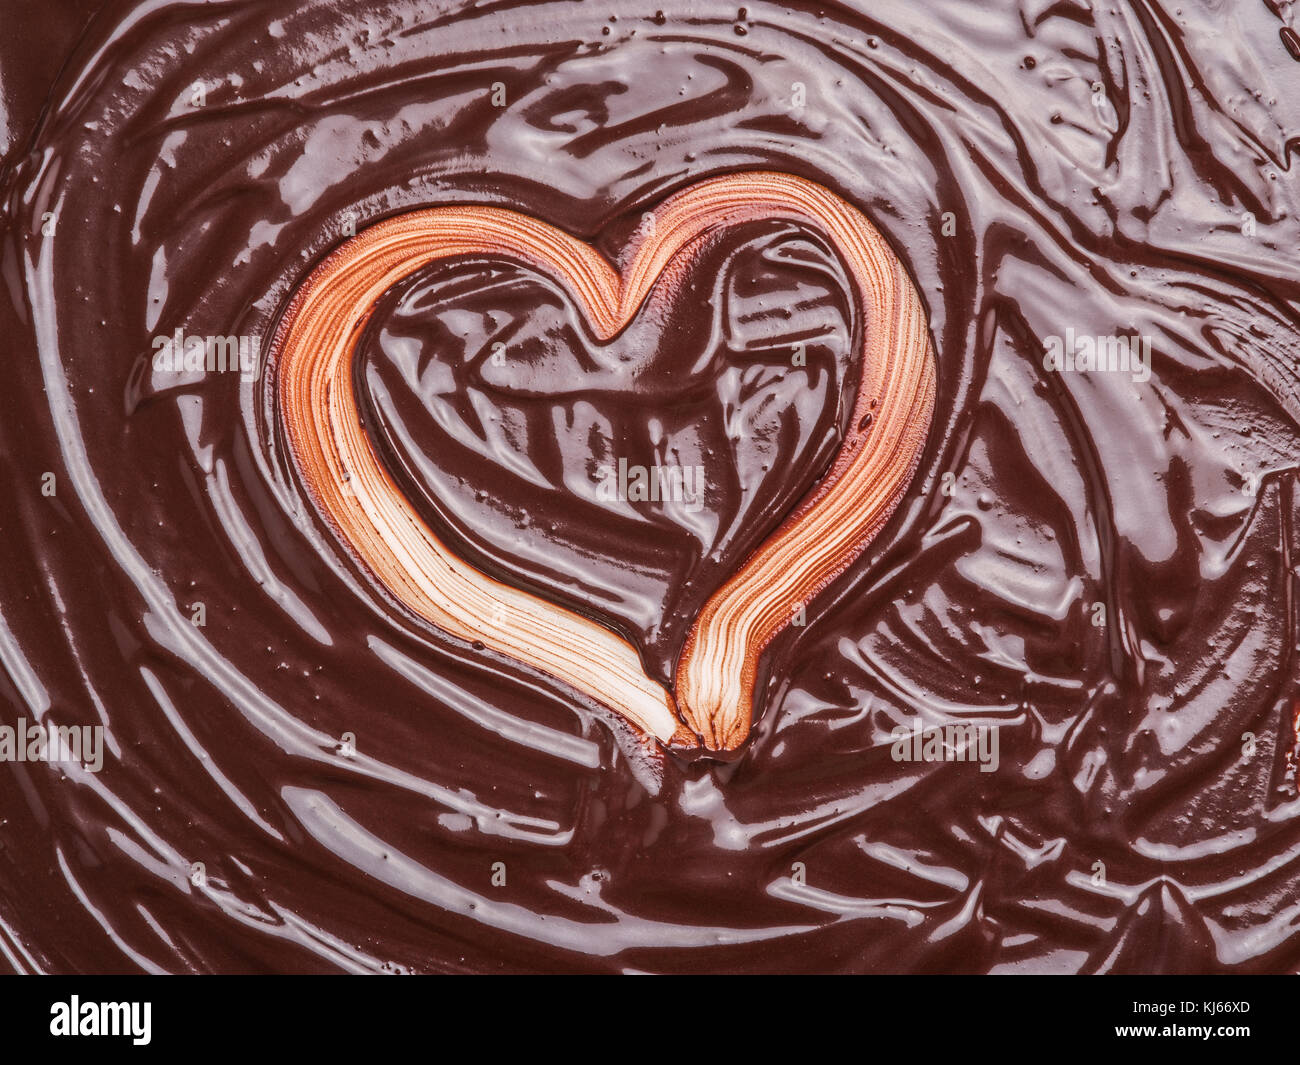 Heart shape on chocolate glaze. Stock Photo